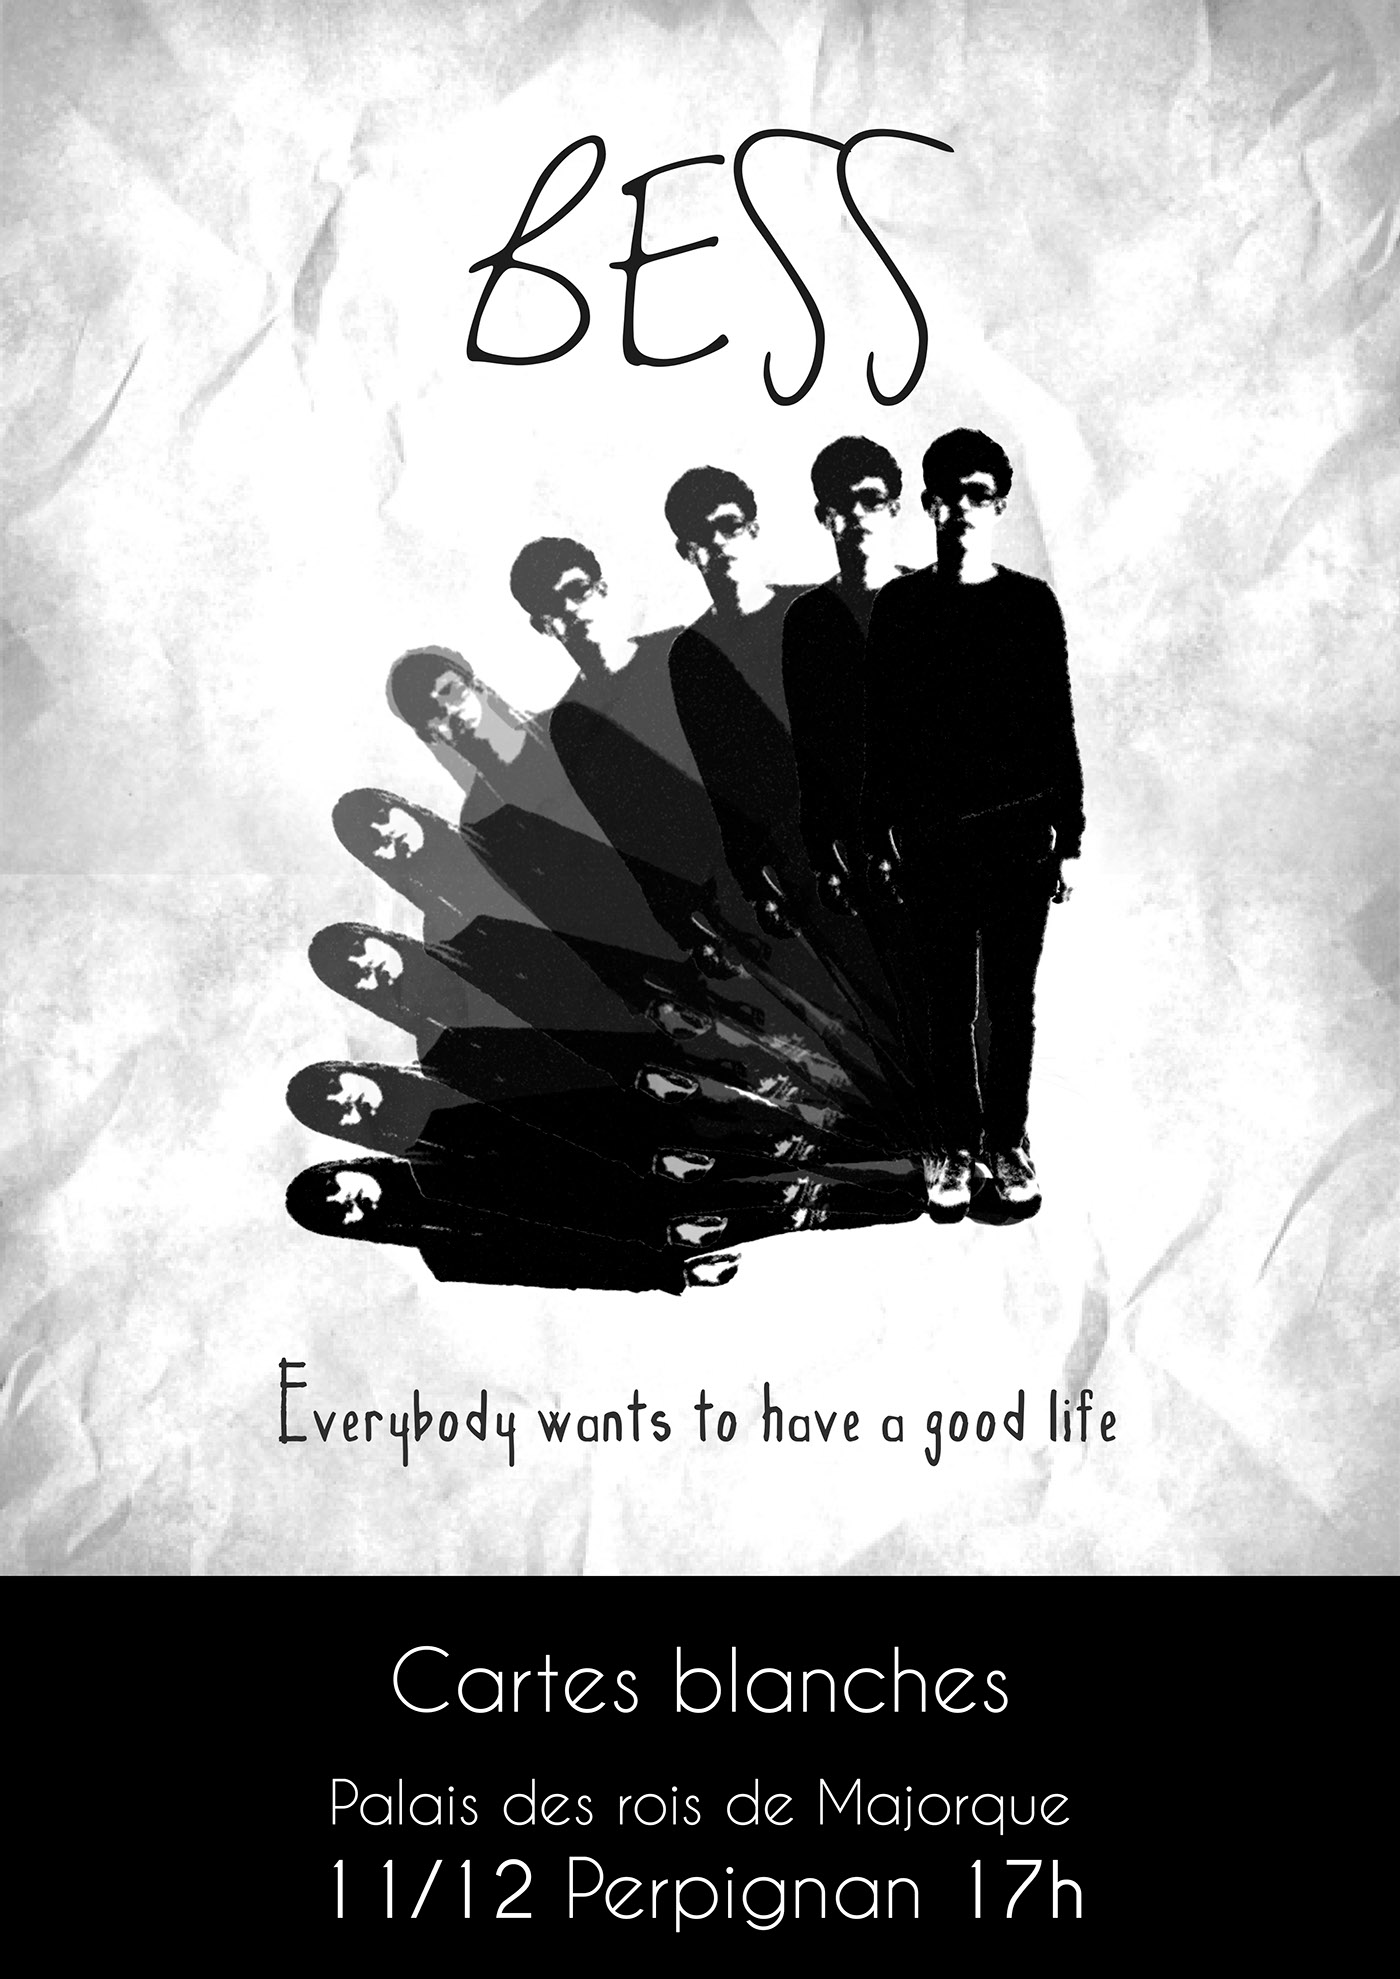 sound Bess Album affiche cover